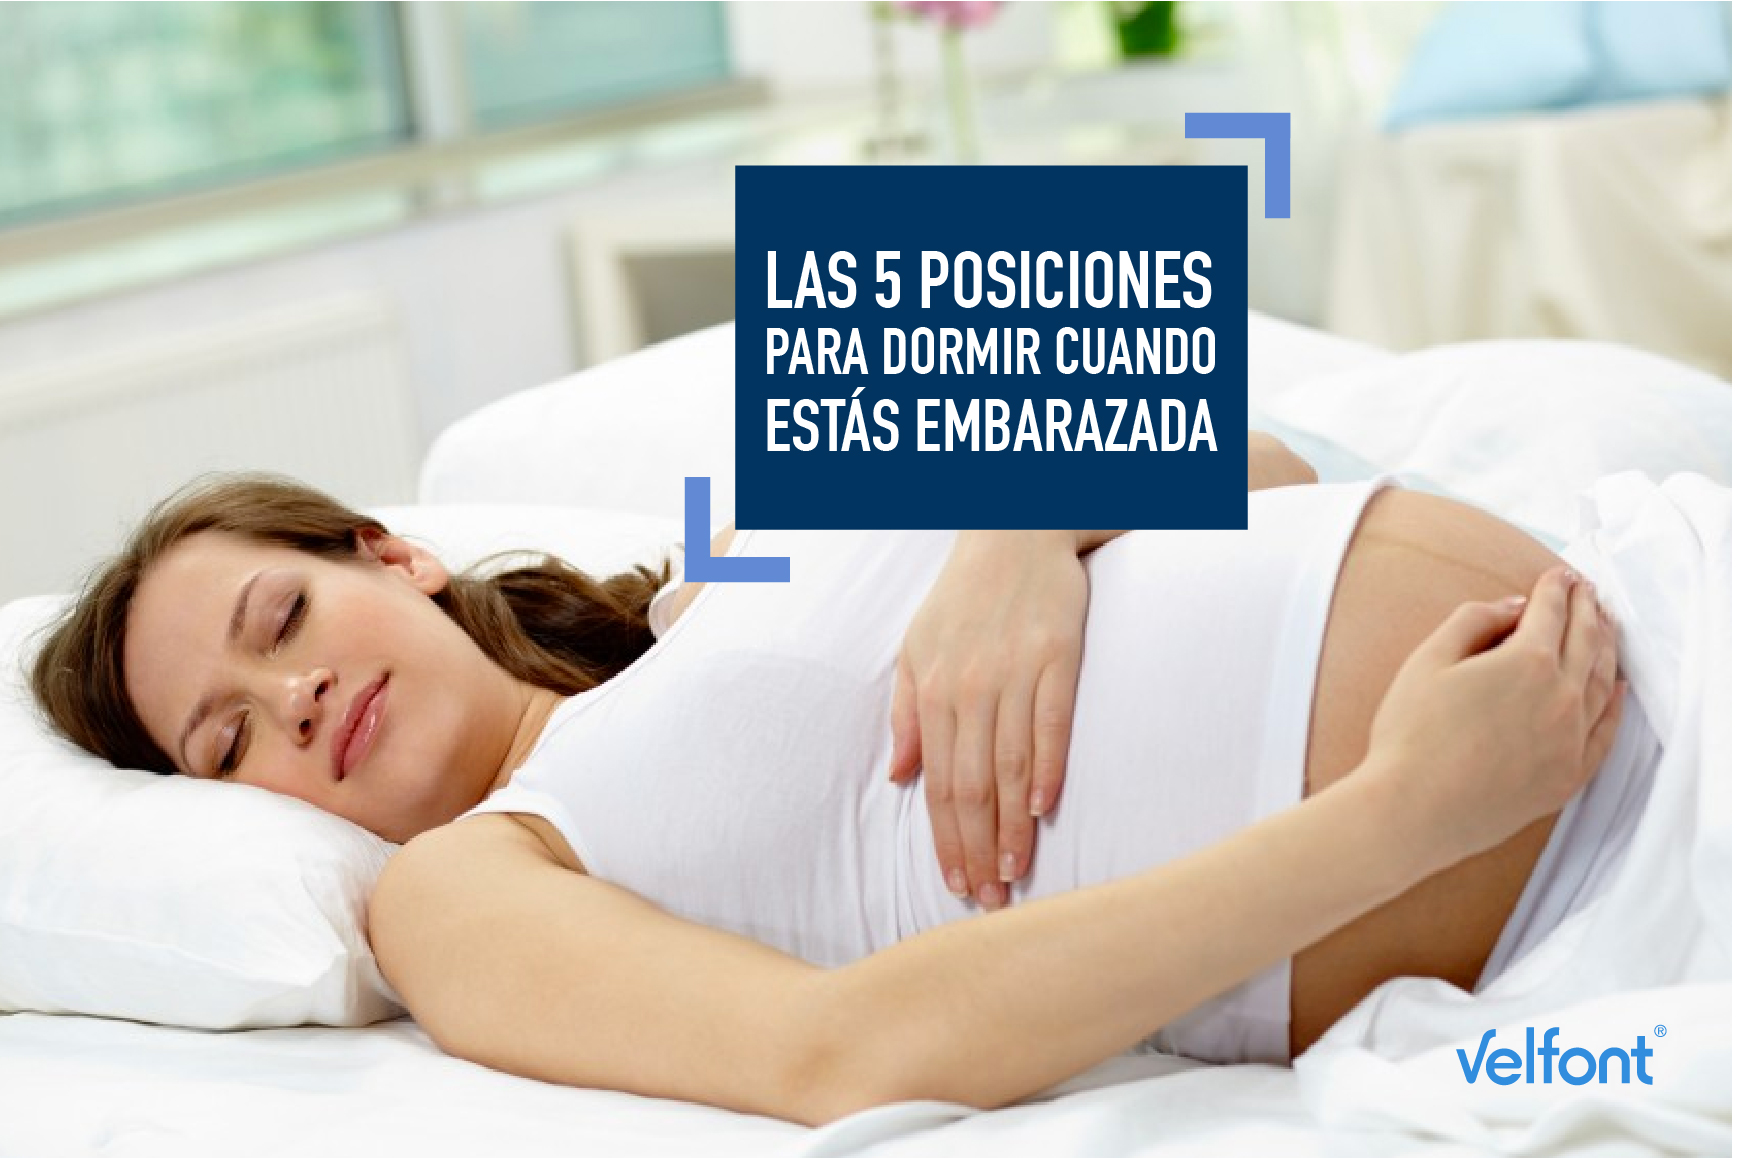 Las 5 posiciones para dormir cuando estás embarazada